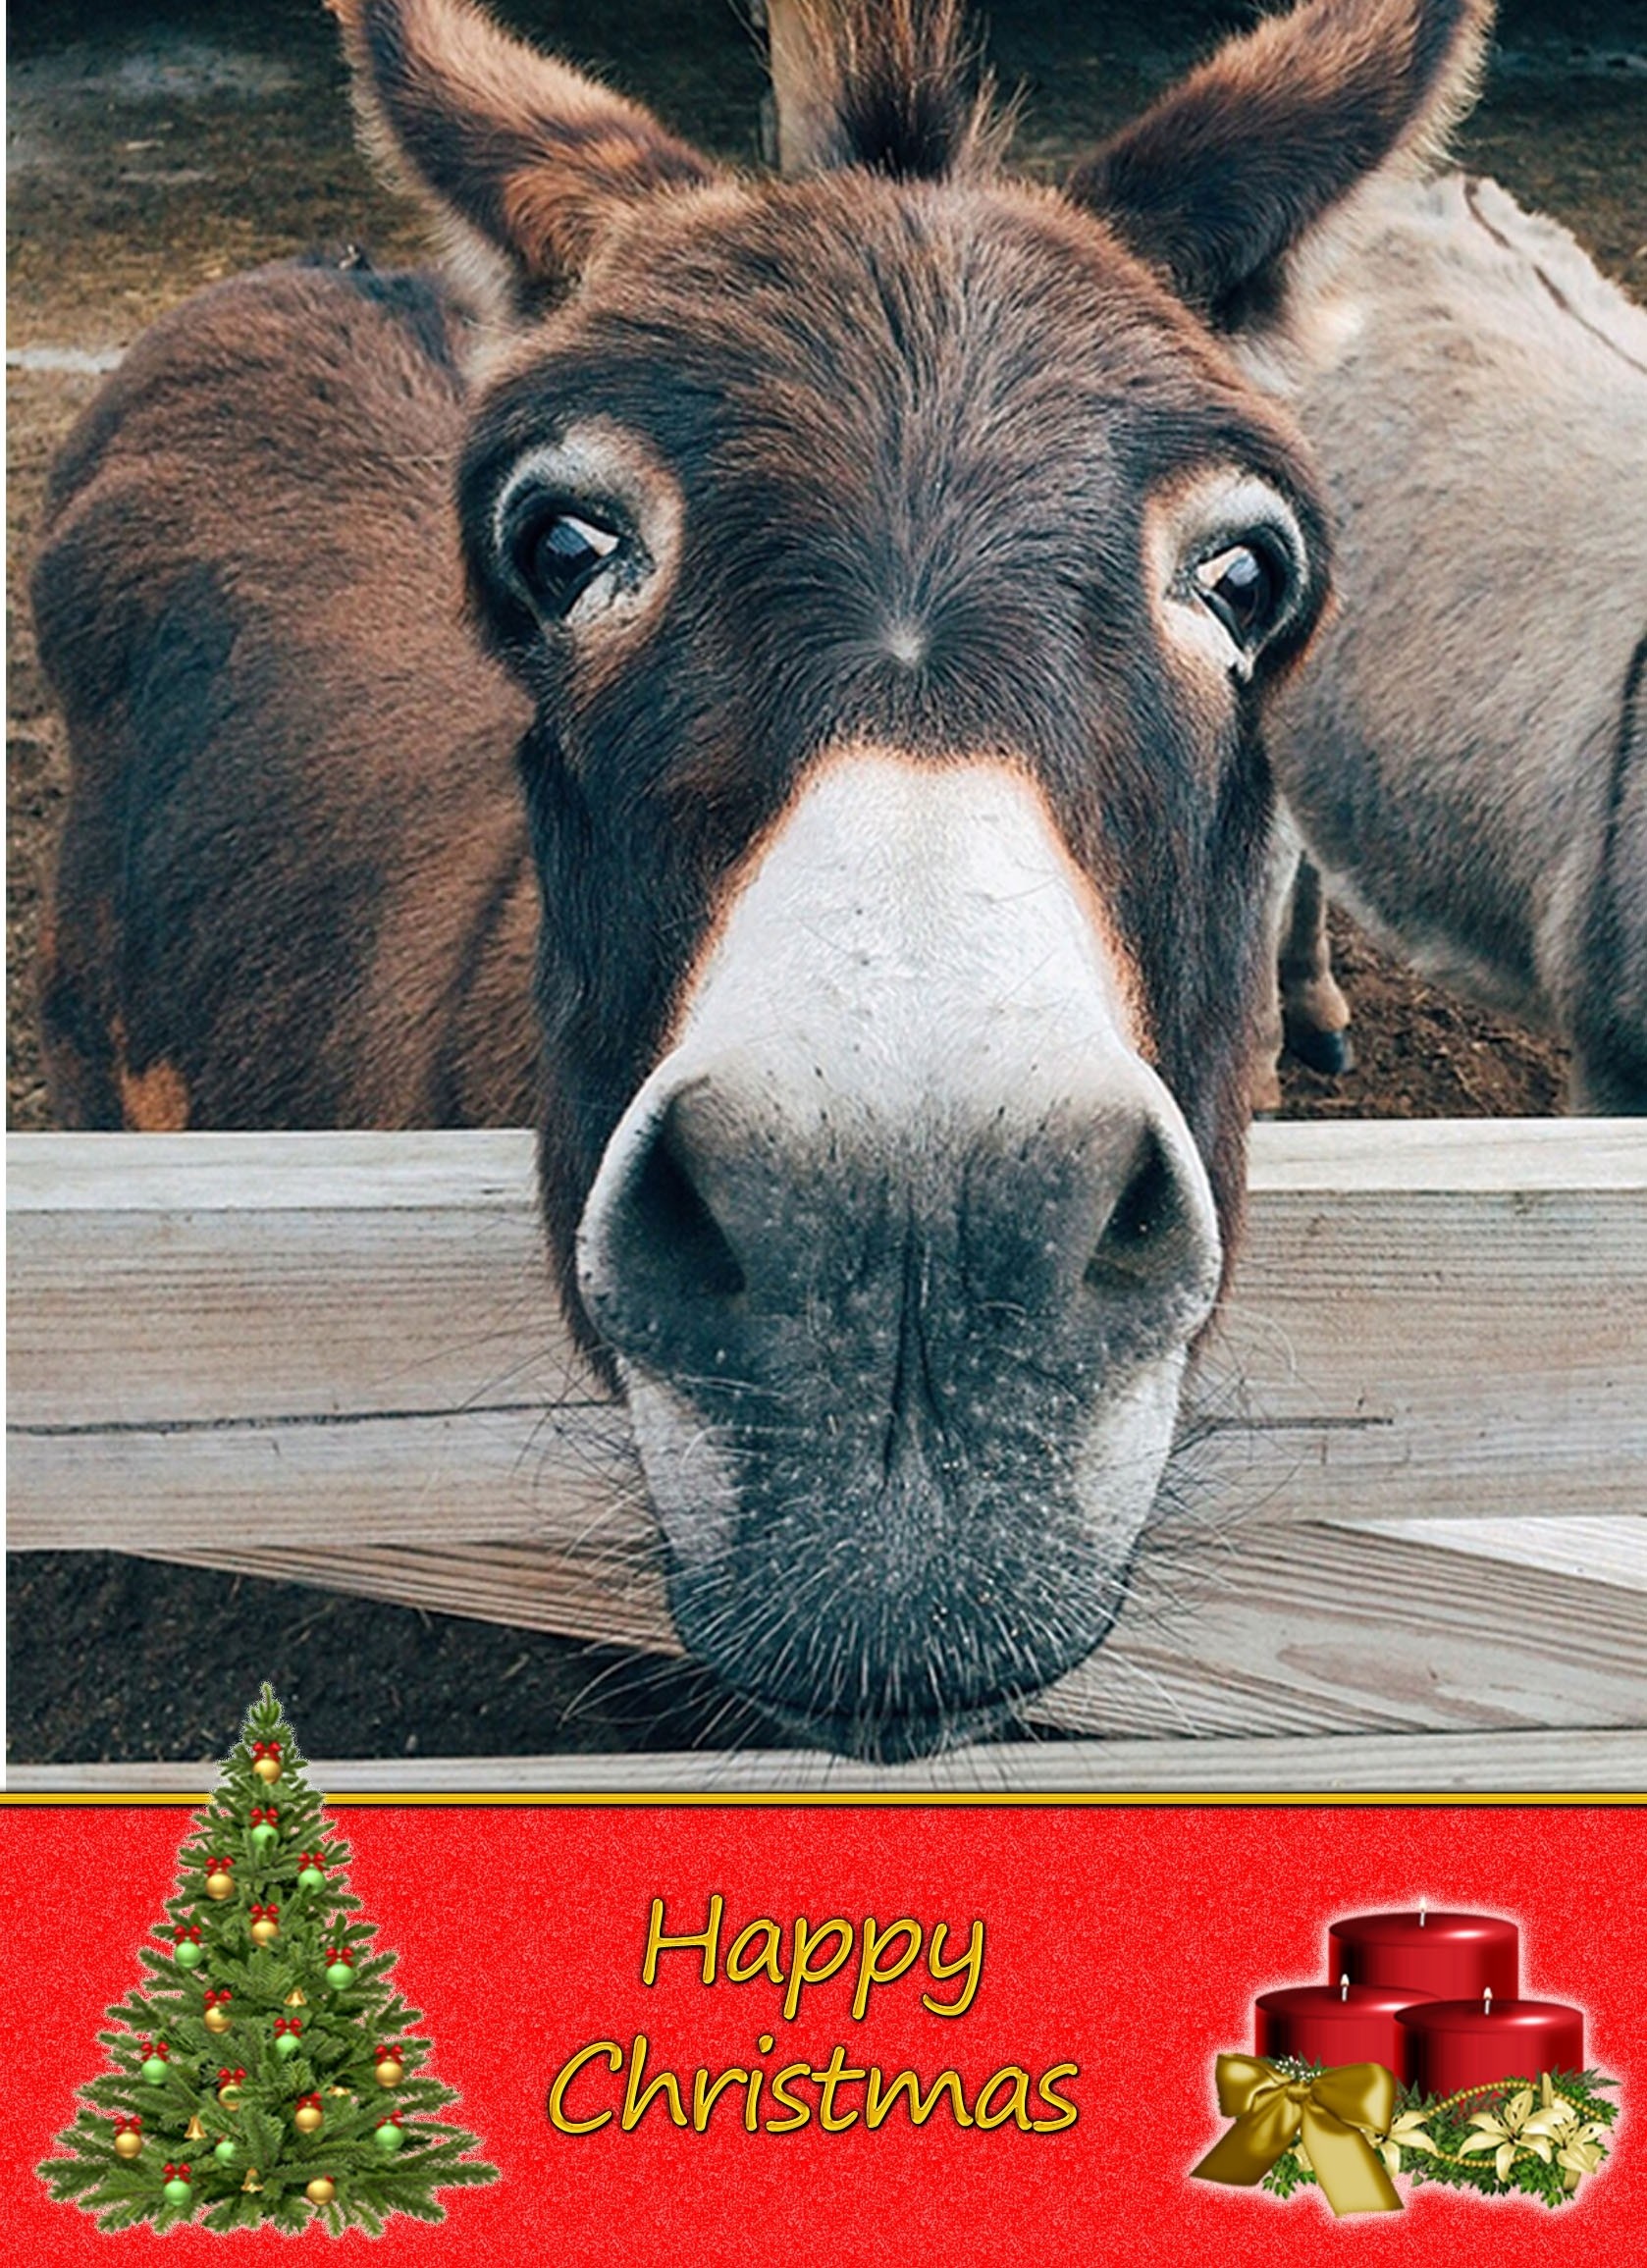 Donkey christmas card